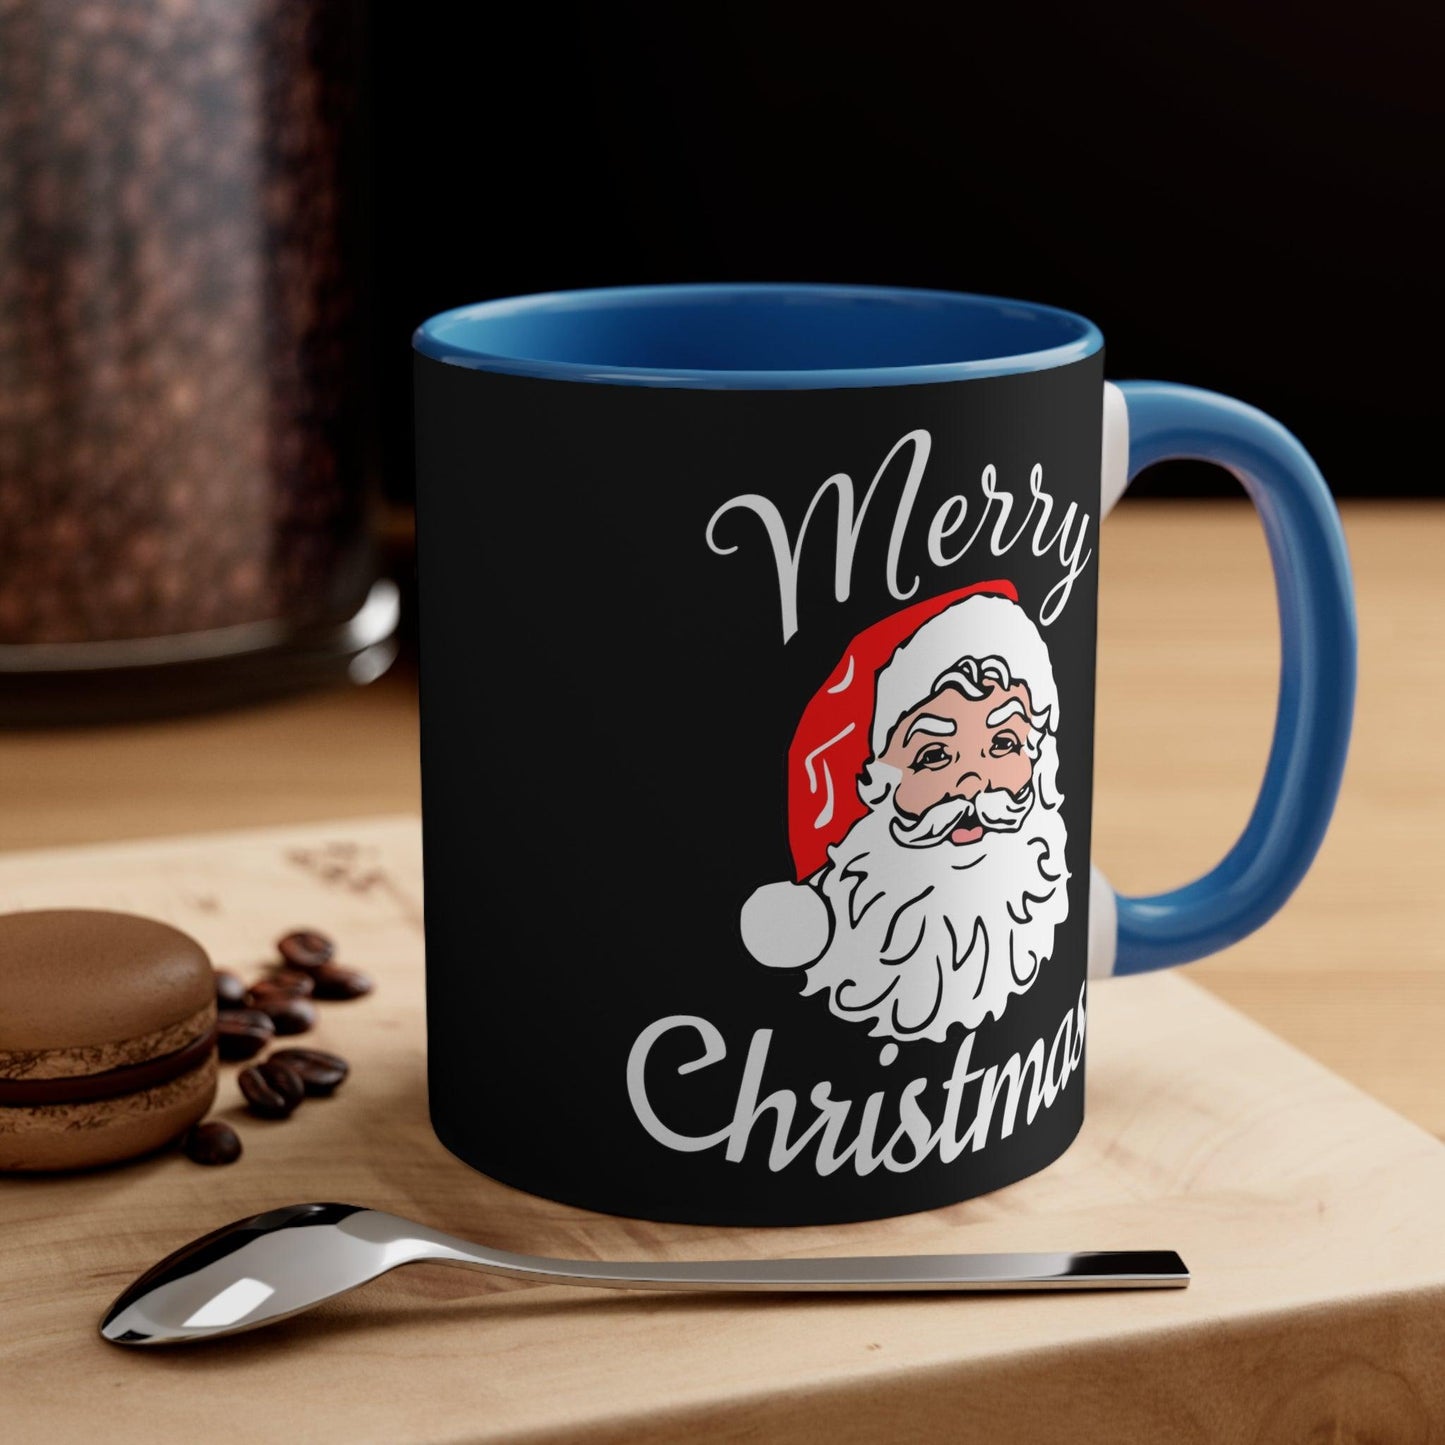 Santa, Merry Christmas Coffee Mug, Christmas Coffee mug Hot Cocoa Mug 11oz Christmas Gift for Coffee lovers